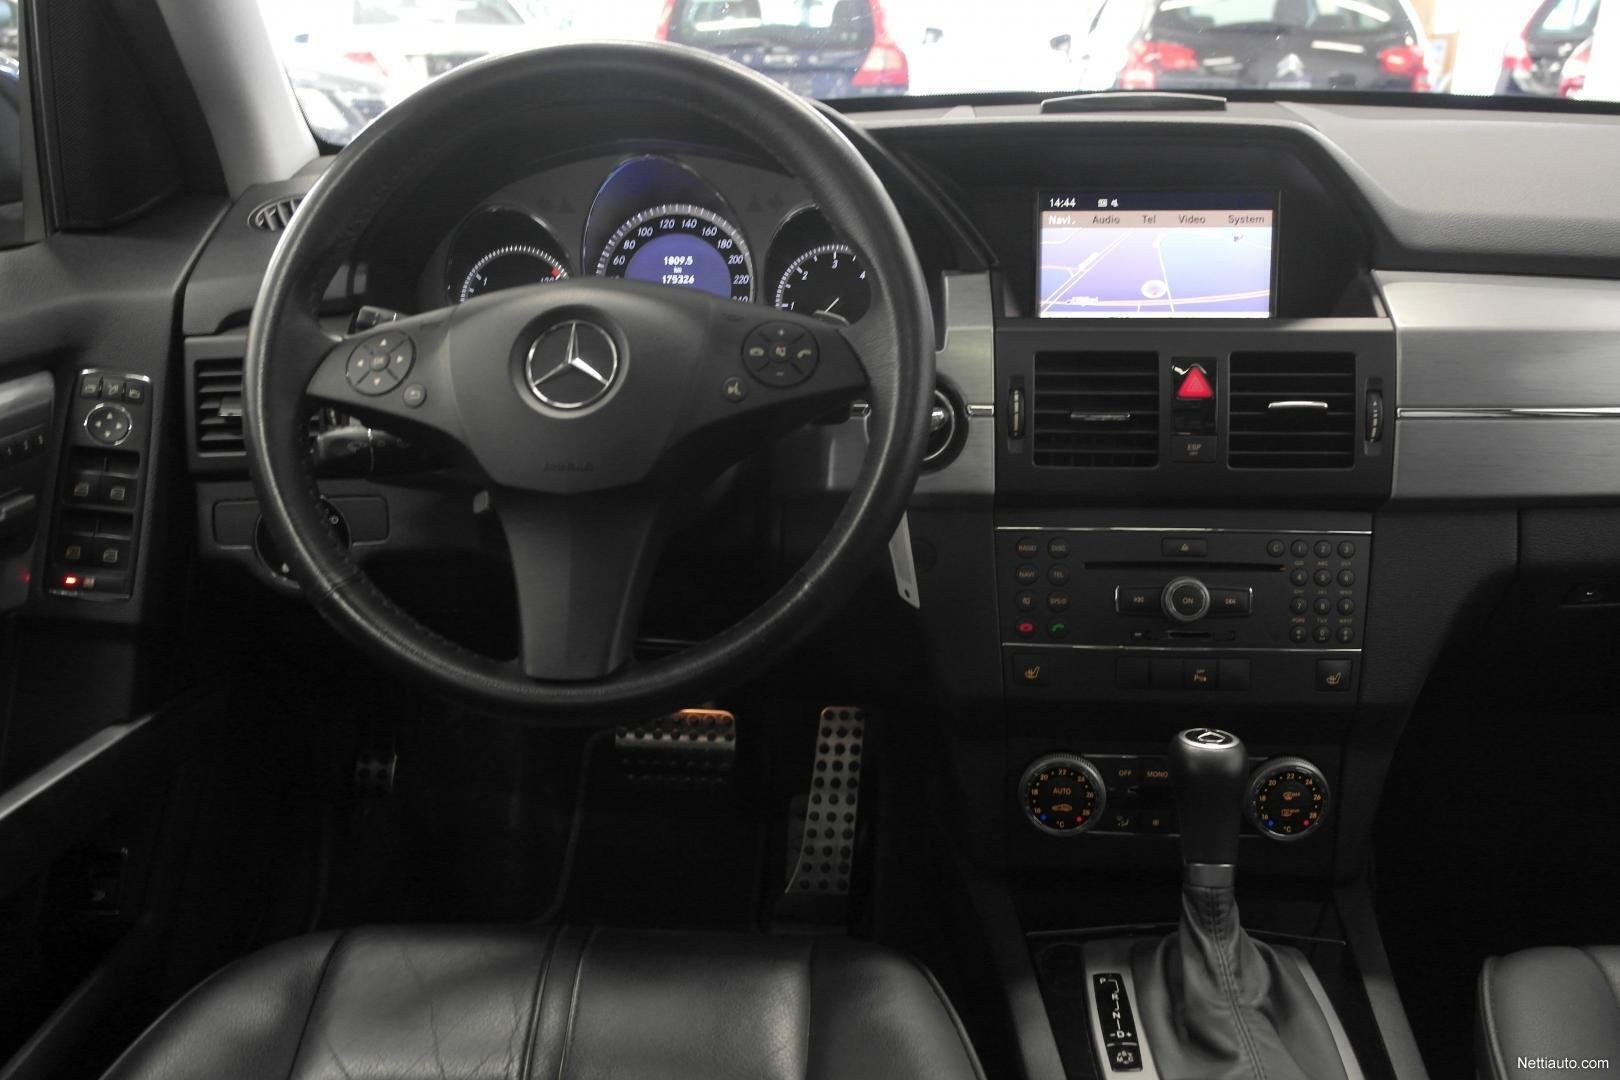 Mercedes benz GLK (X204) monitoiminäytön korjaus